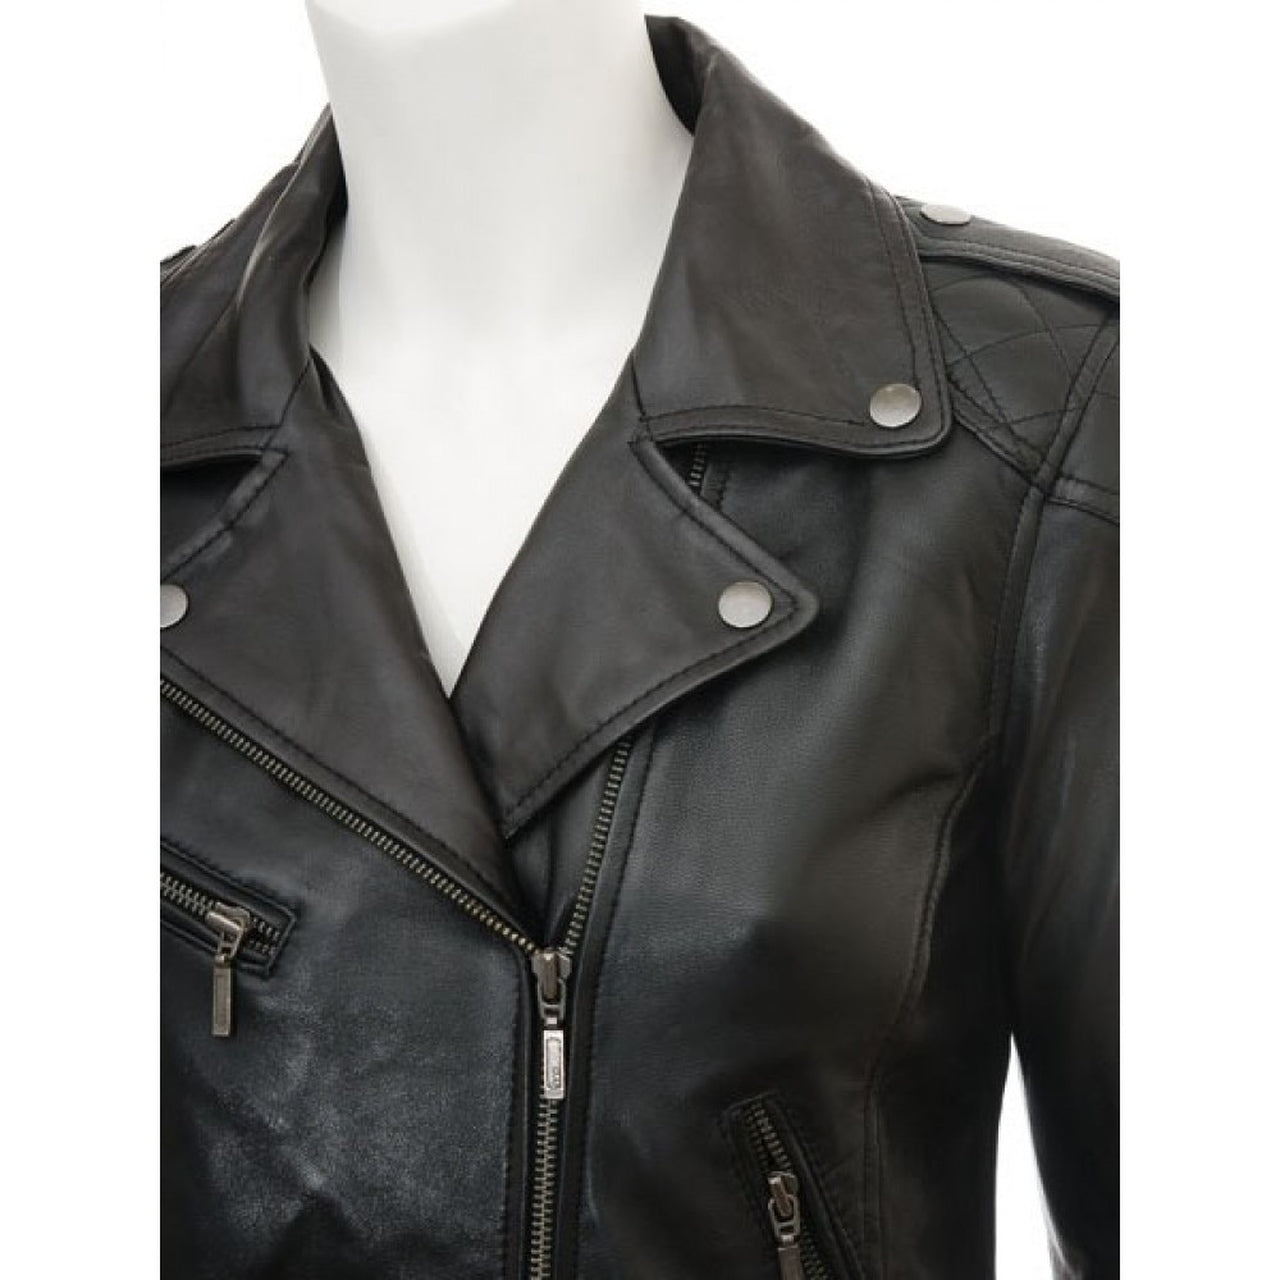 Black Stylish Leather Jacket for Women - Leather Jacket